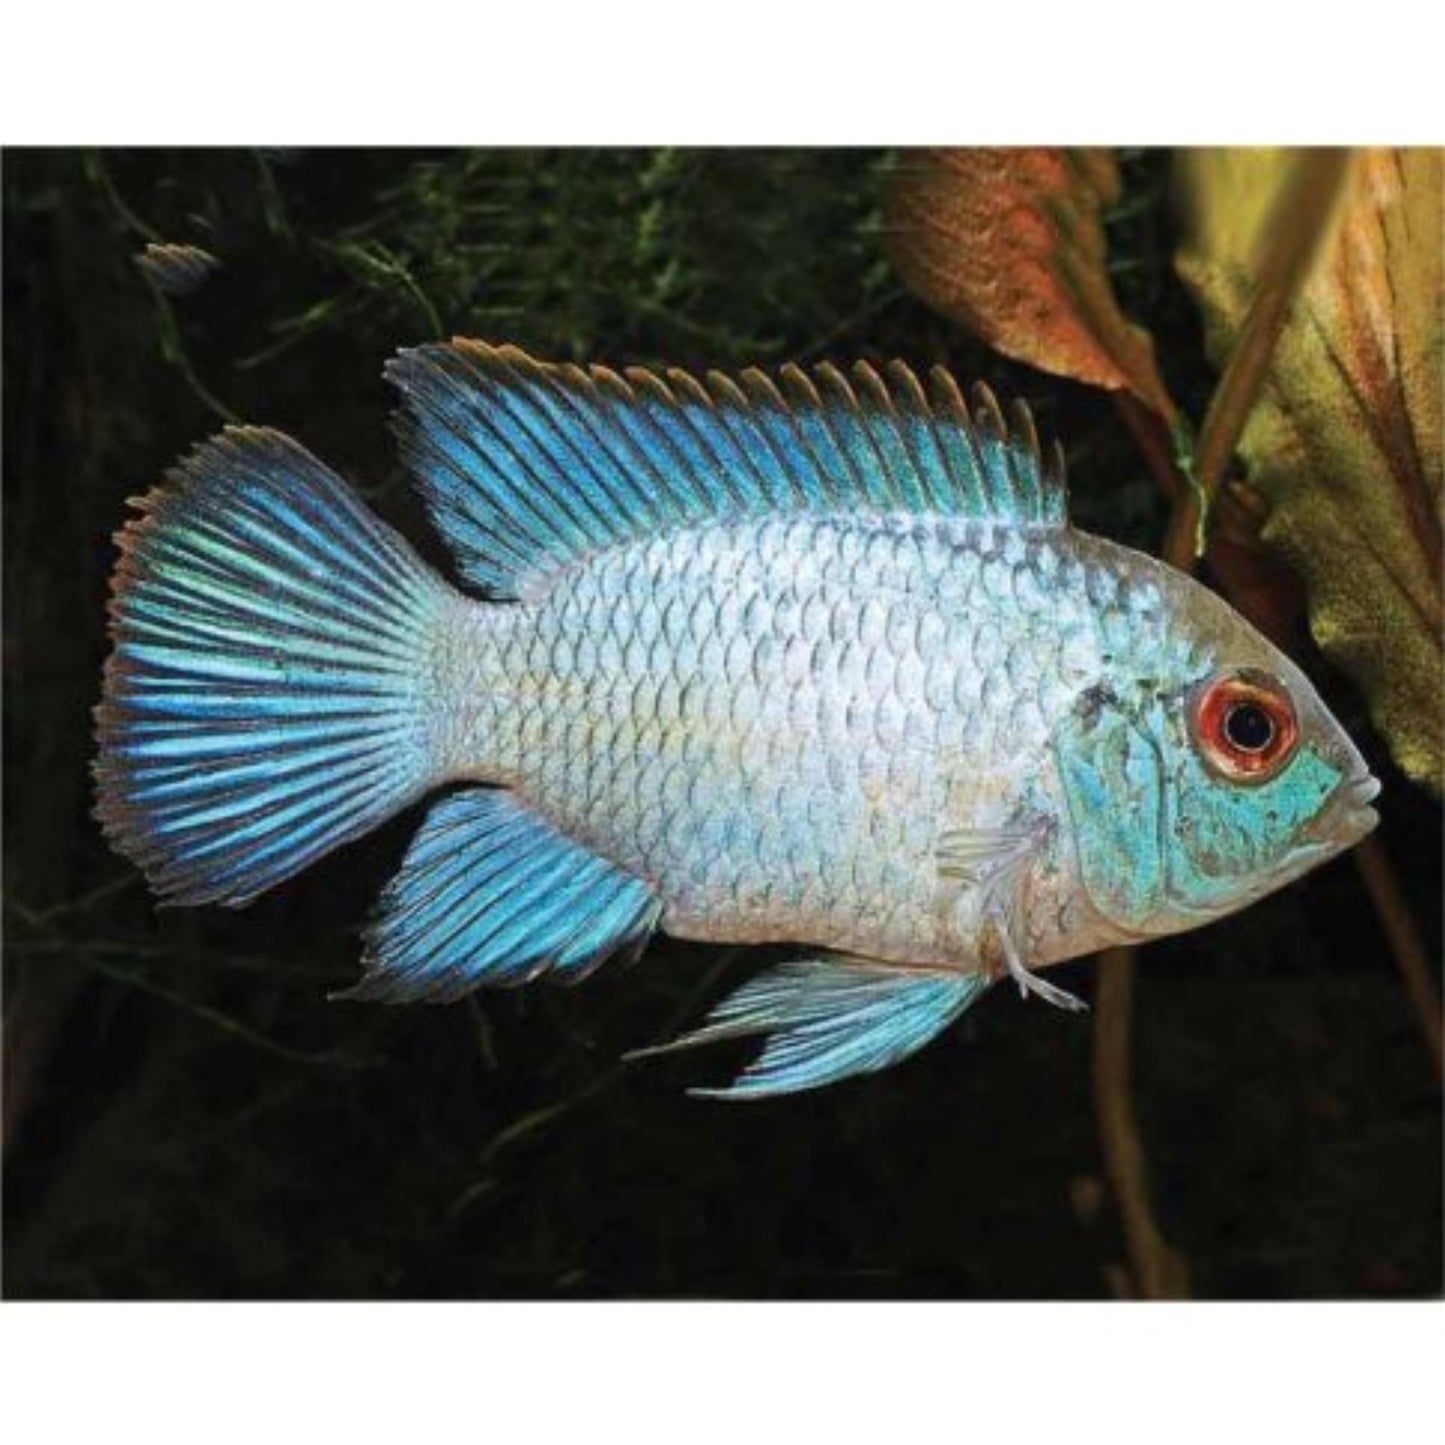 Andinoacara Pulcher Neon Blue: Pesce d'acquario dalla Colorazione iridescente